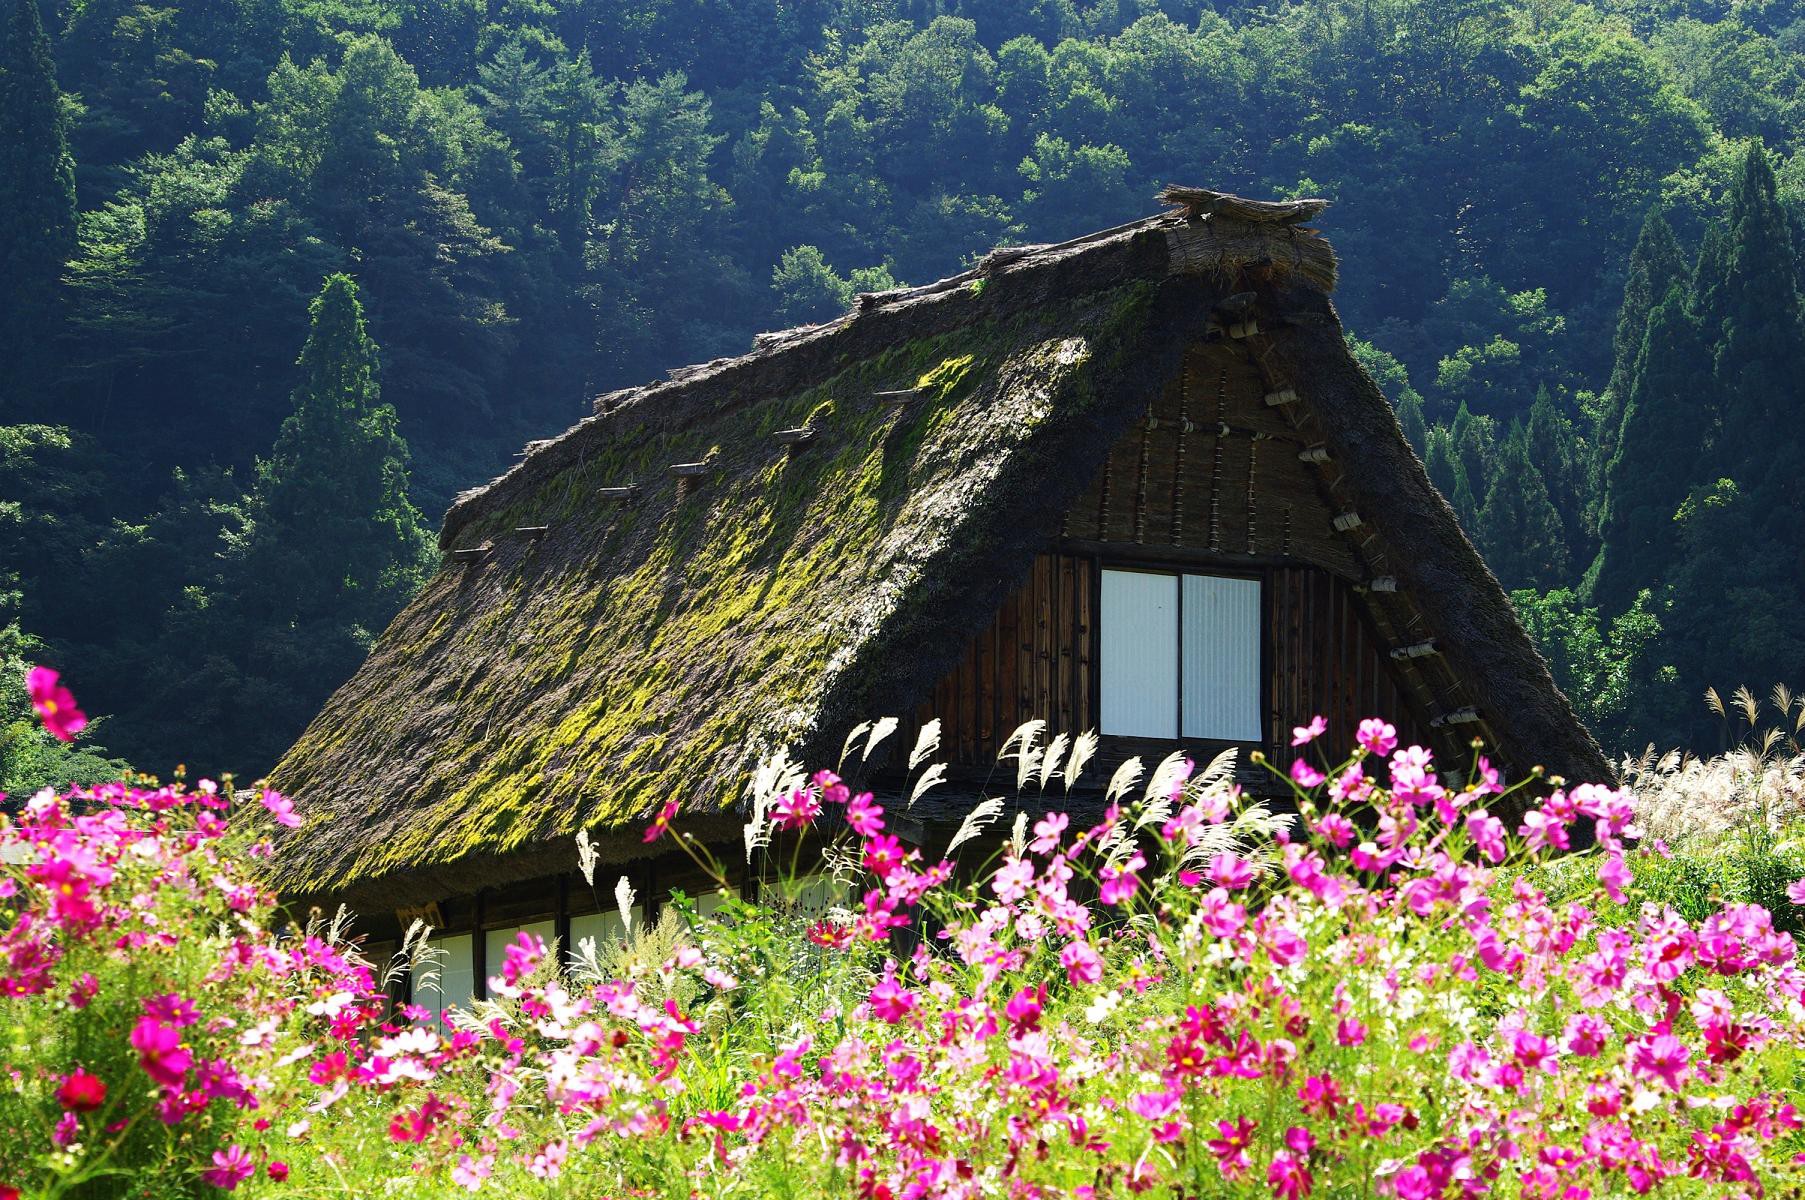 Với màu sắc nhẹ nhàng và đường nét tinh tế, bức tranh về ngôi nhà an yên tại vùng nông thôn Nhật Bản sẽ khiến bạn cảm thấy bình yên và thư thái. Không khí trong lành của nông thôn Nhật Bản sẽ làm cho bạn cảm thấy thật gần gũi với tự nhiên.